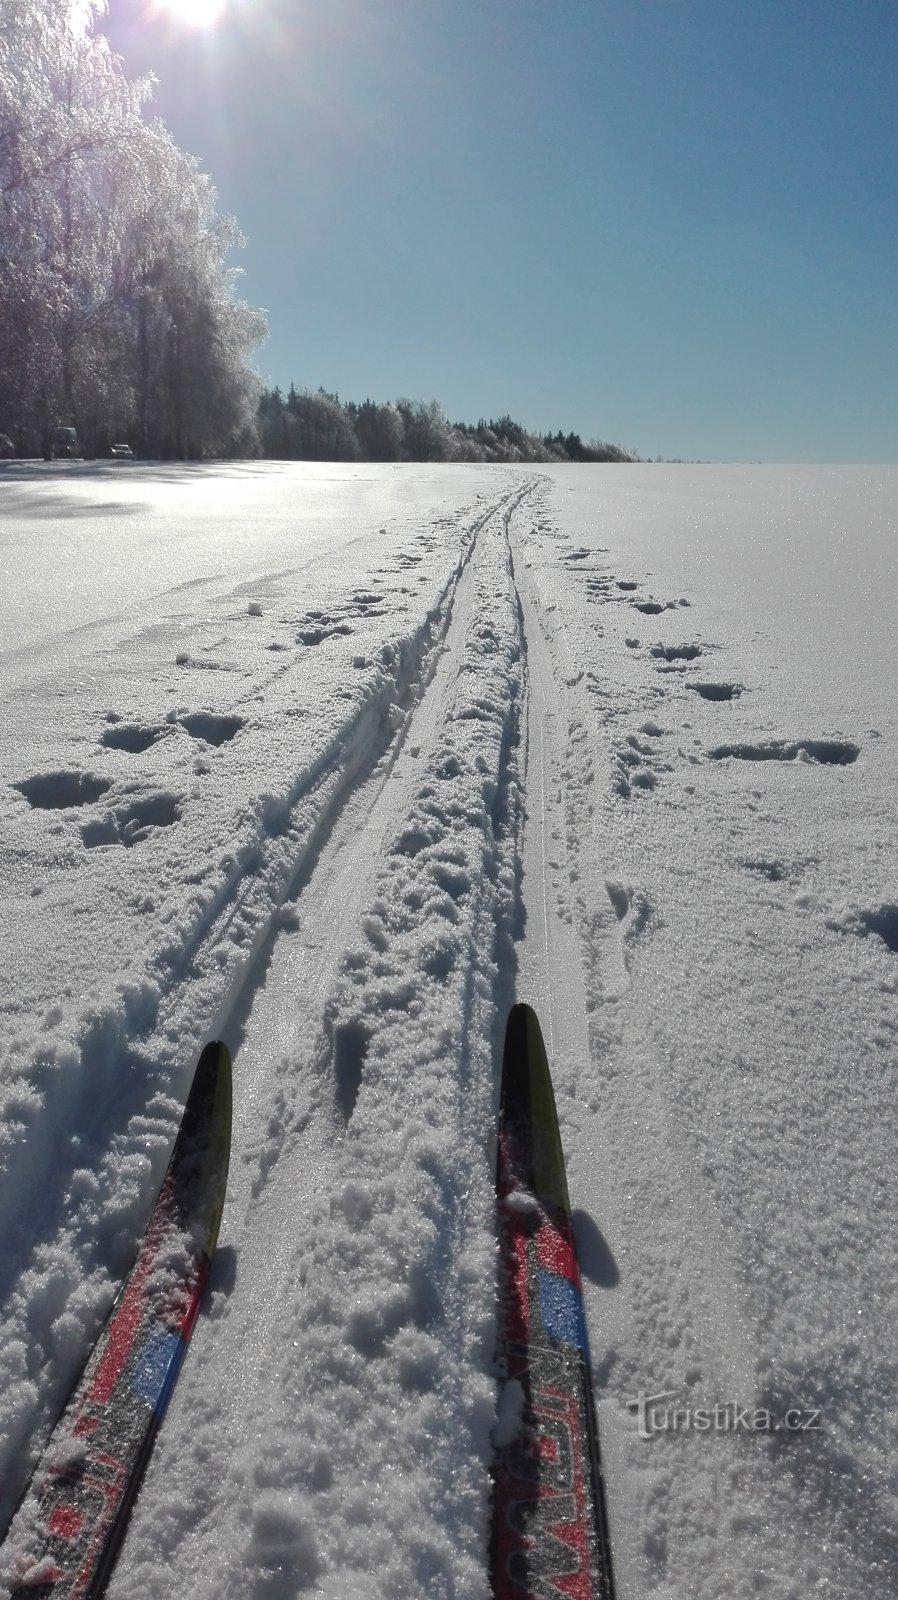 Winter Highlands em esqui cross-country - circuito cross-country em Rozkoša.